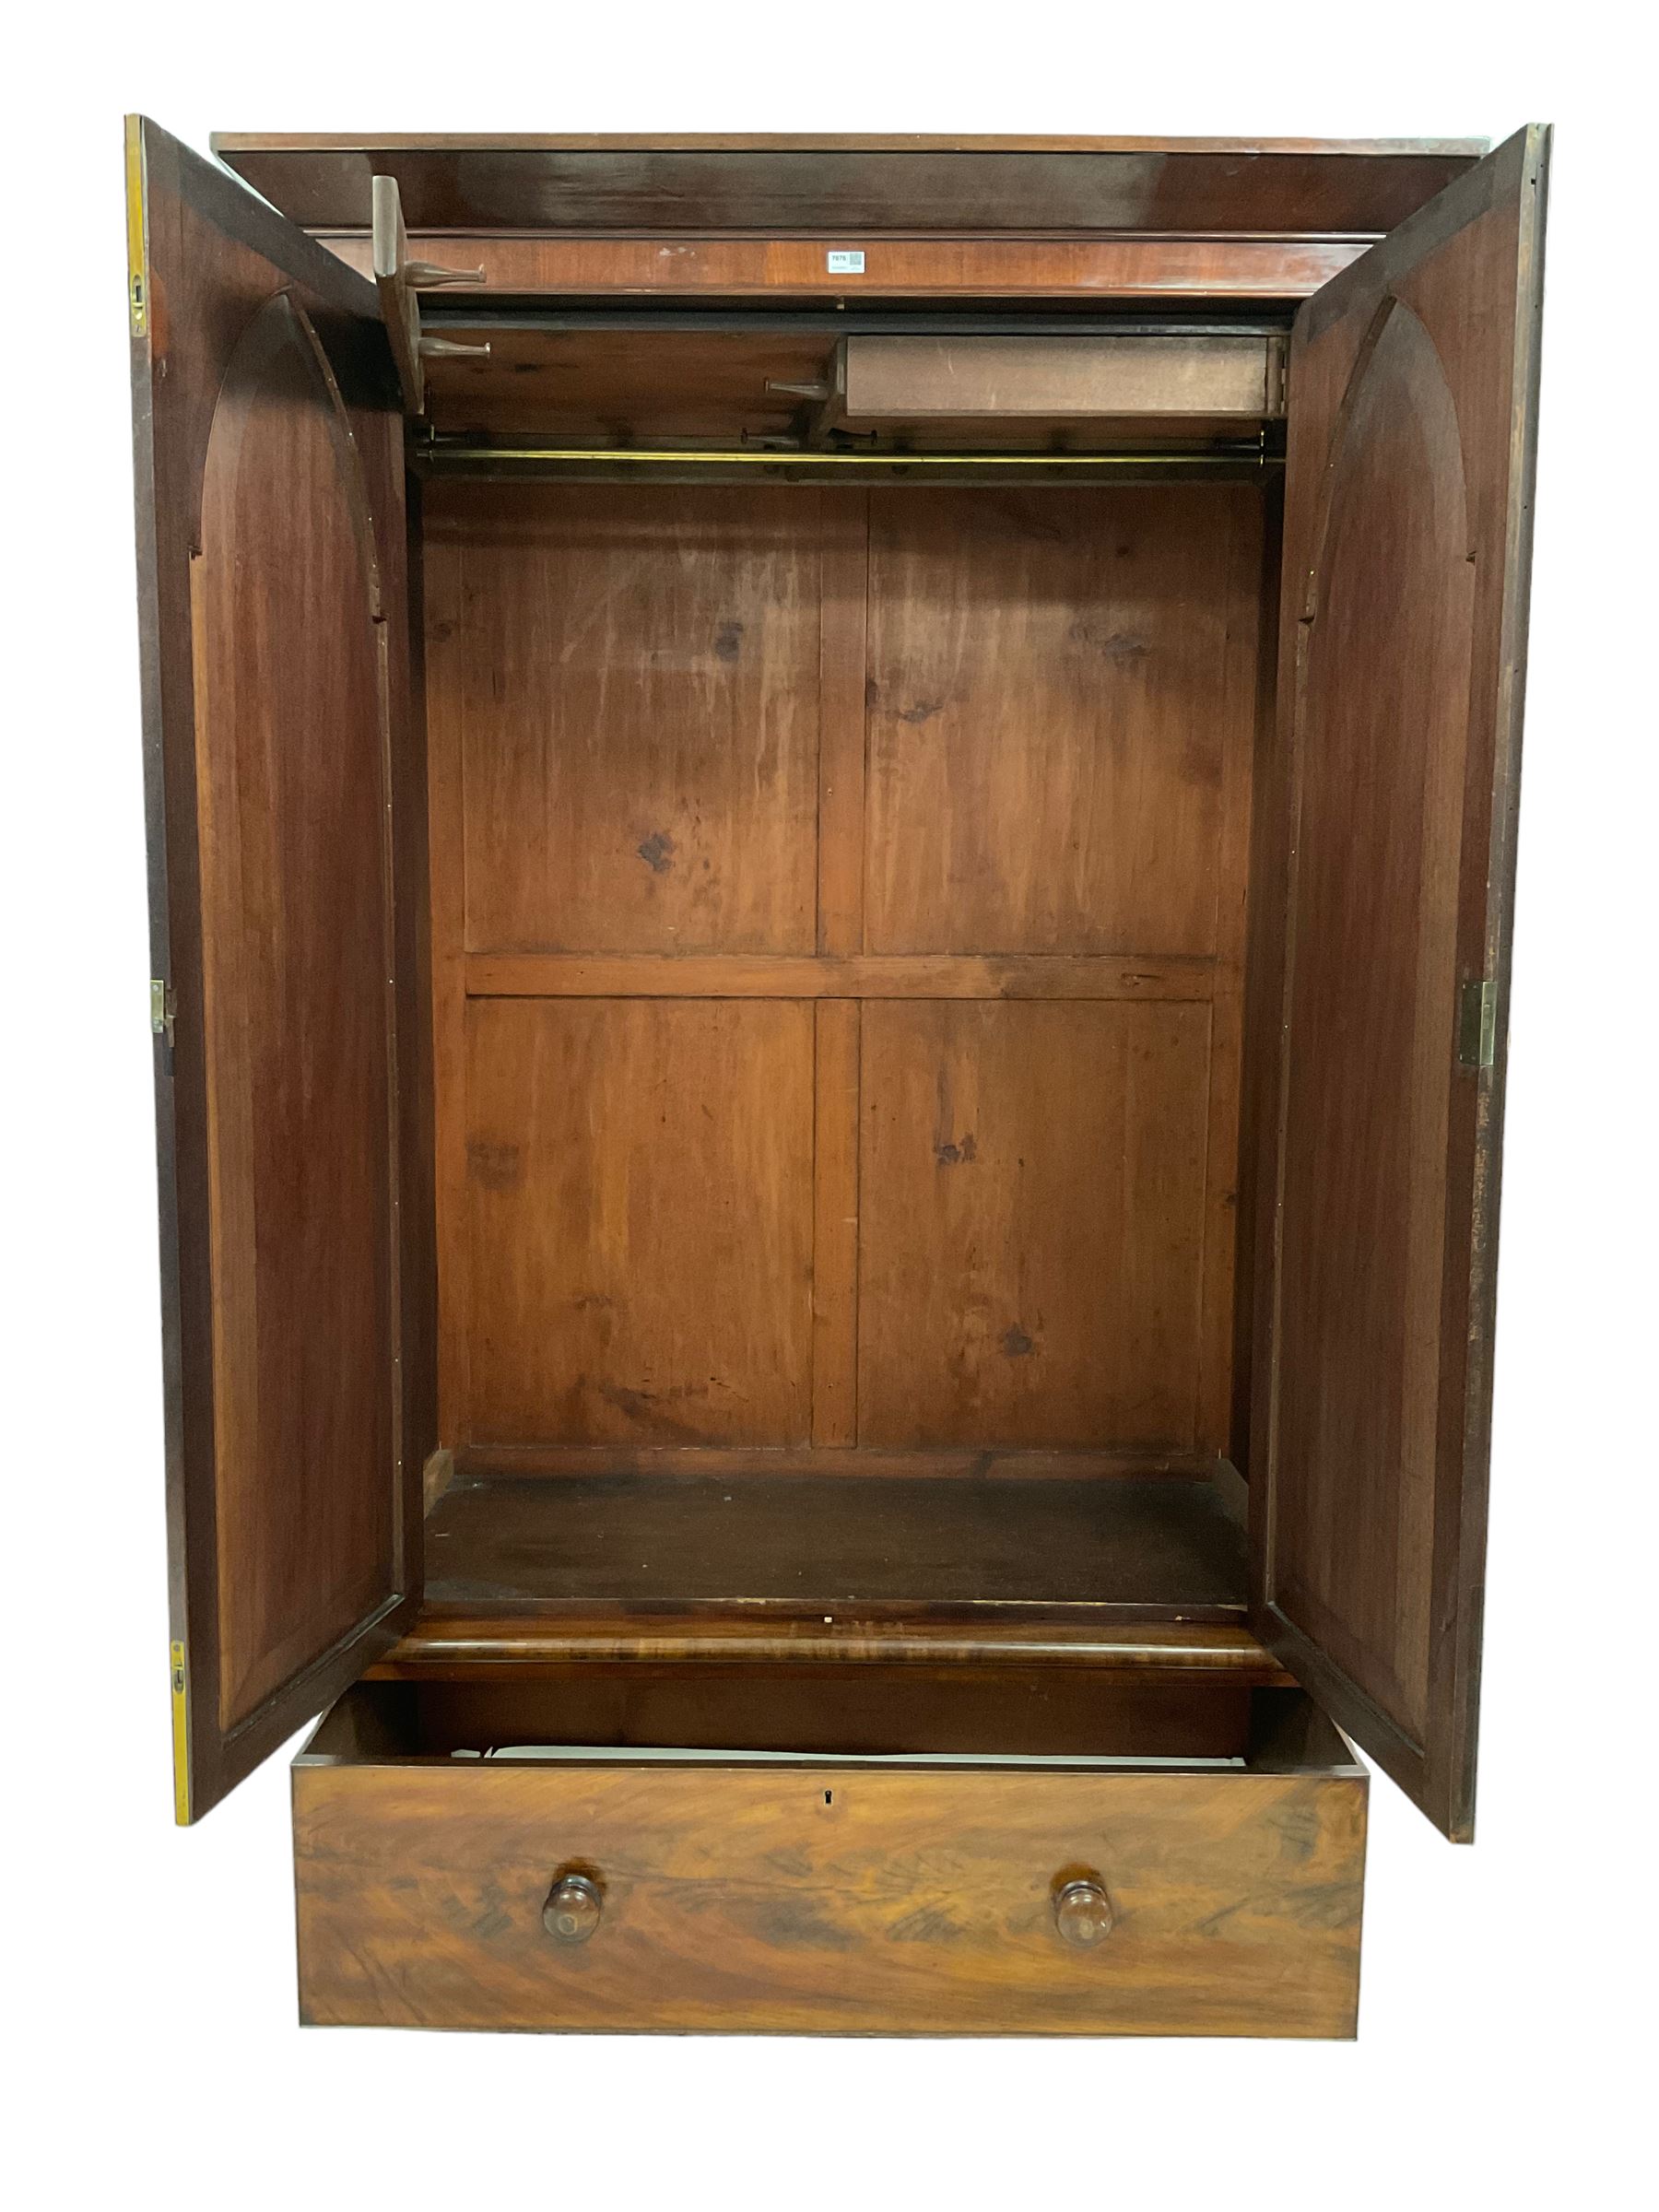 Early 19th century mahogany double wardrobe - Image 4 of 4